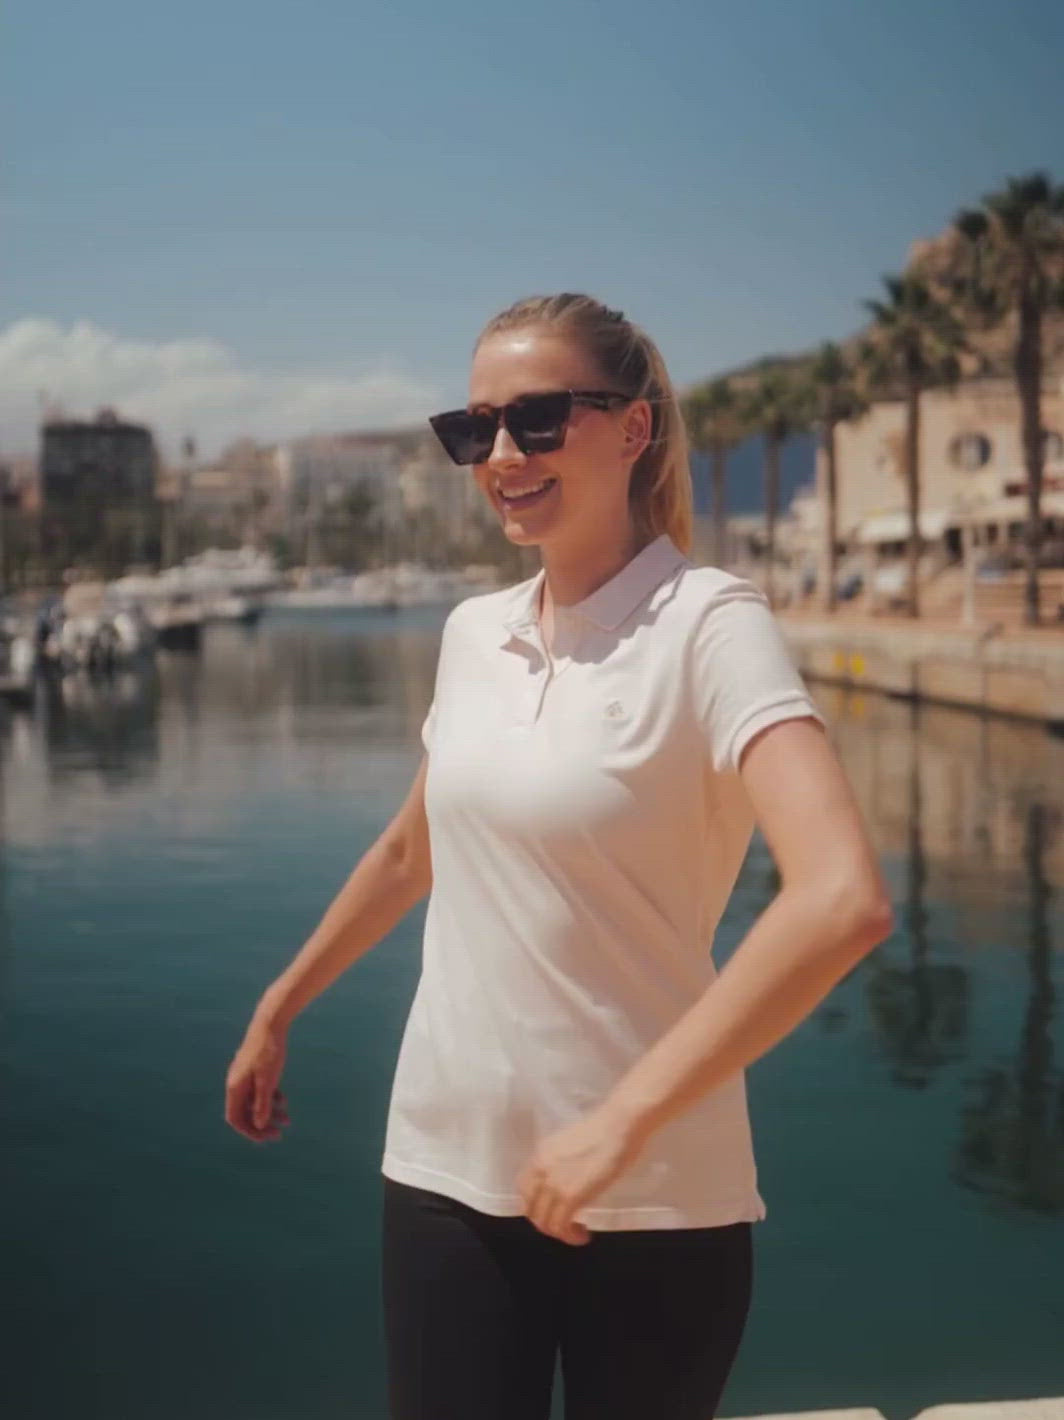 Milano dámské polo tričko z biobavlny růžové žena se otáčí v přístavu u moře s palmami a modrým nebem